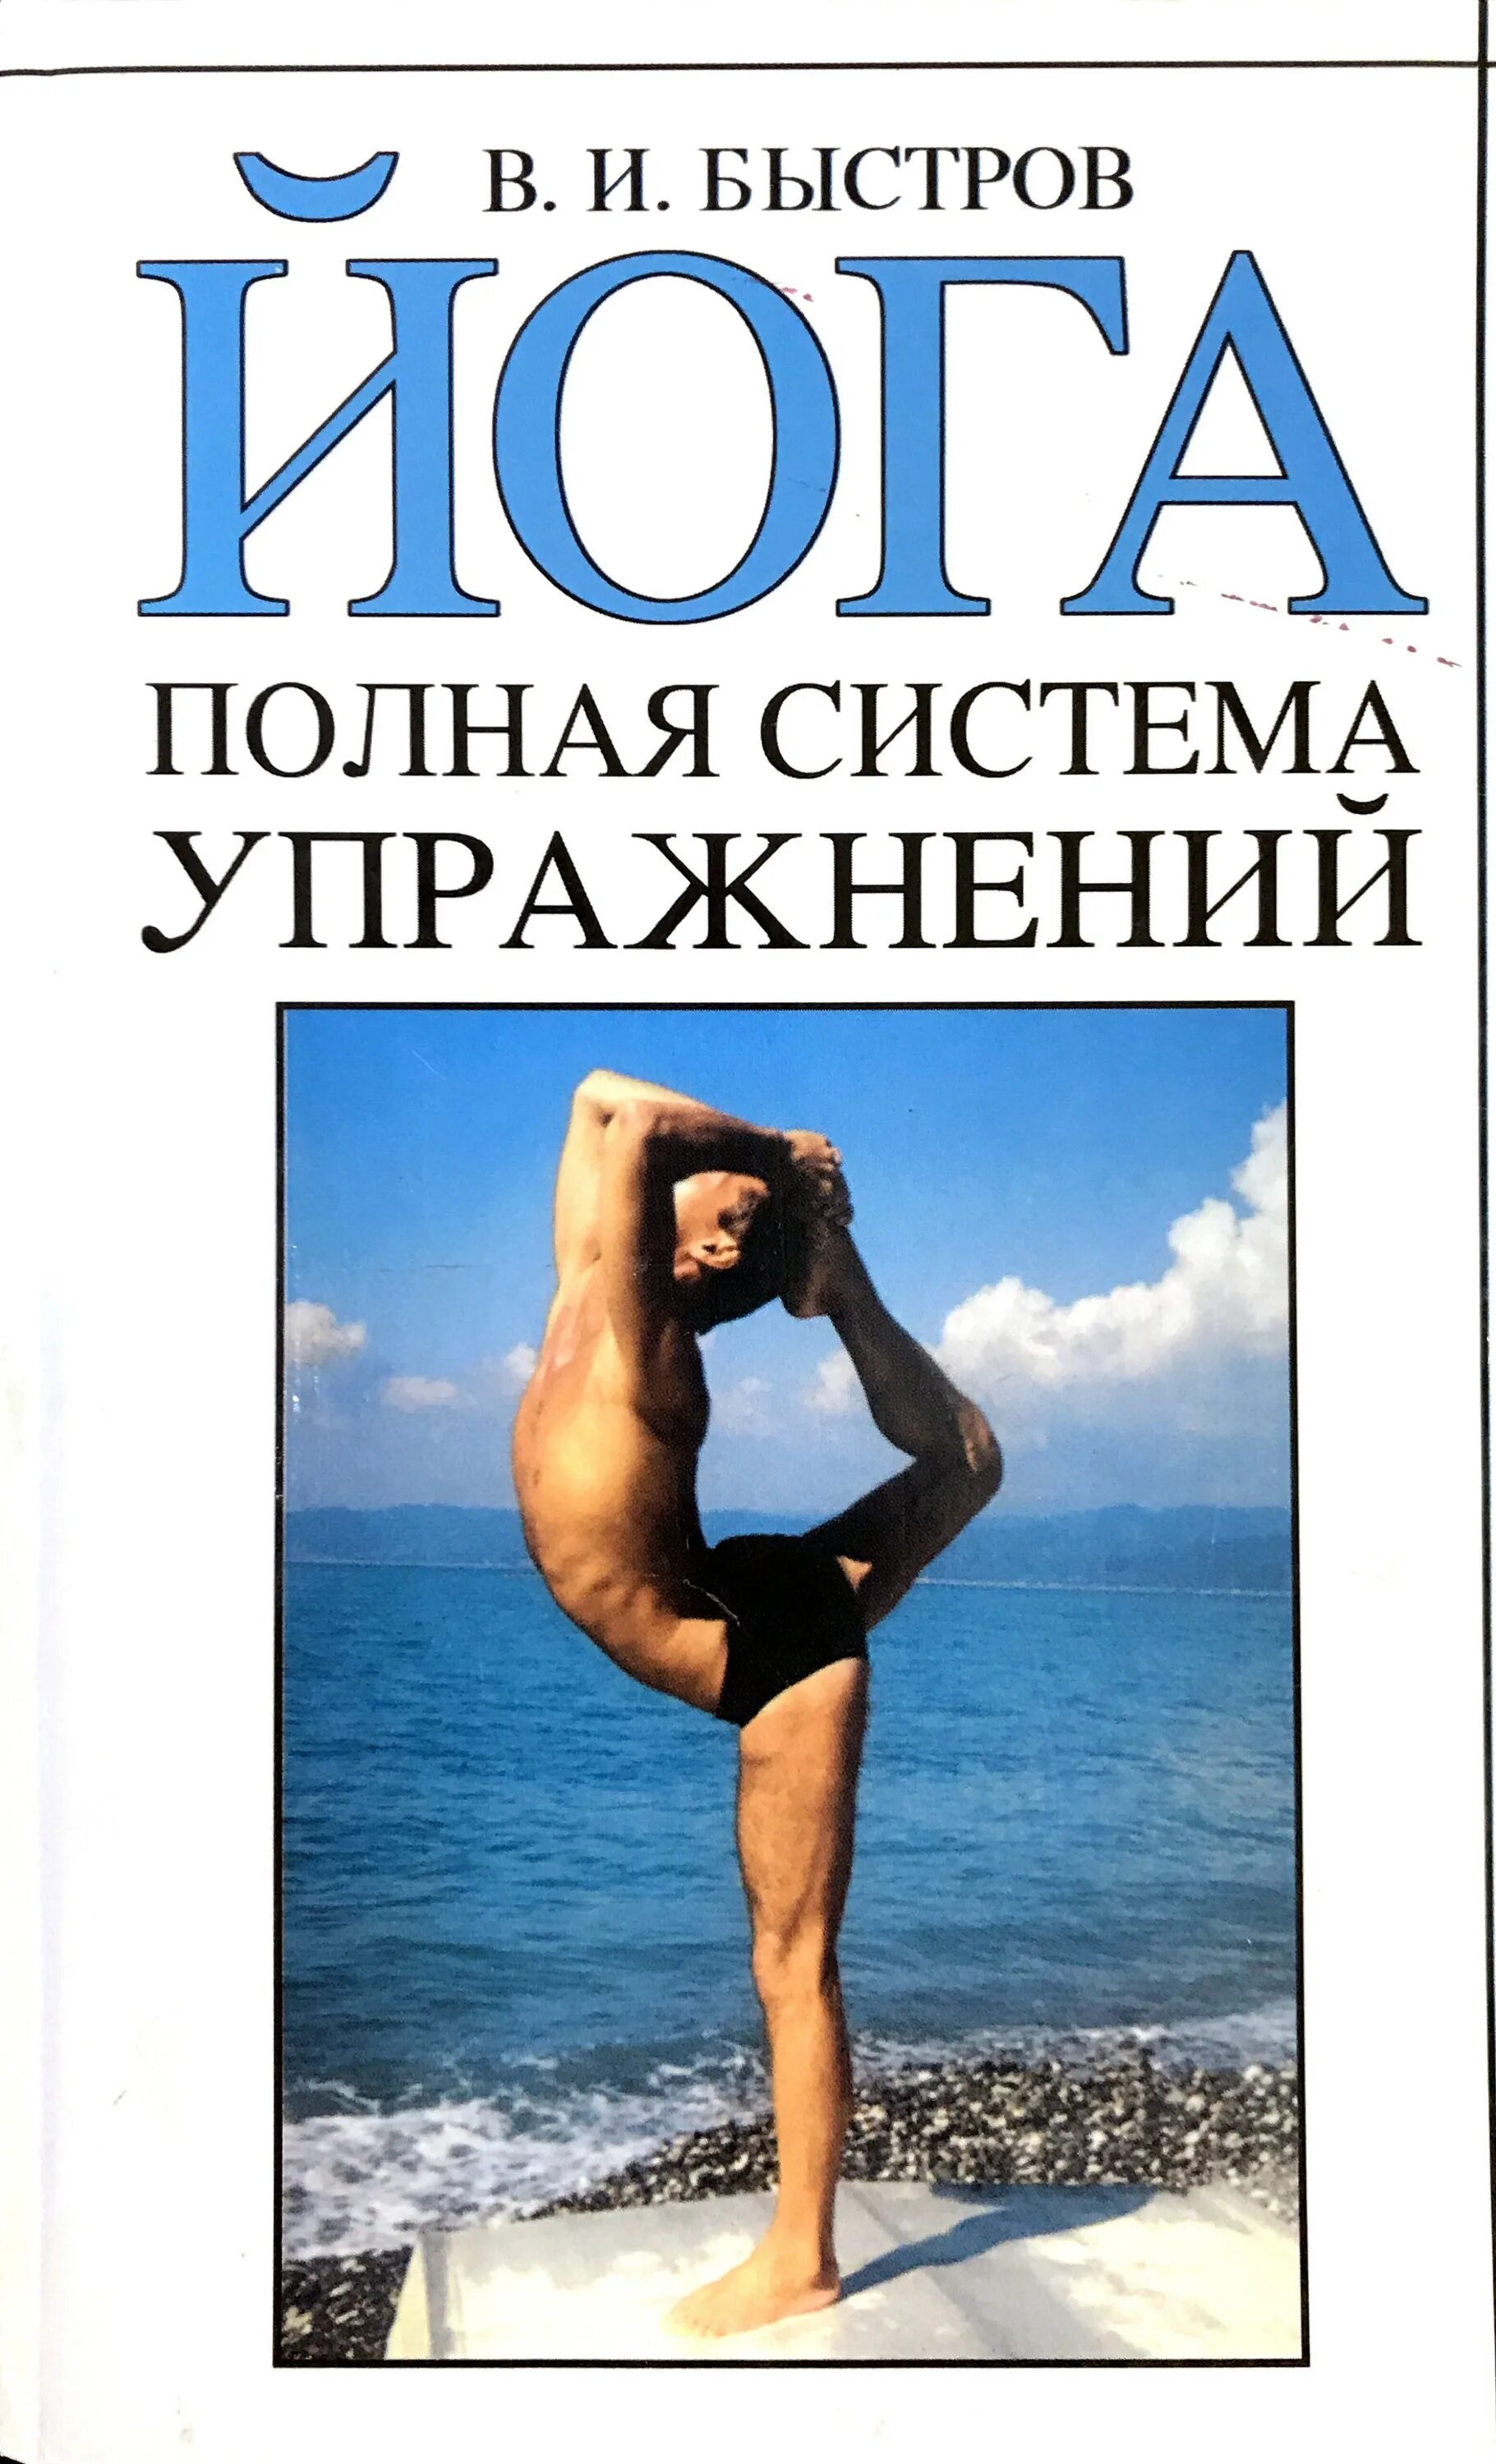 Книга йога отзывы. Йога полная система упражнений Быстров. Книги по йоге. Йога книга. Книги о йоге.